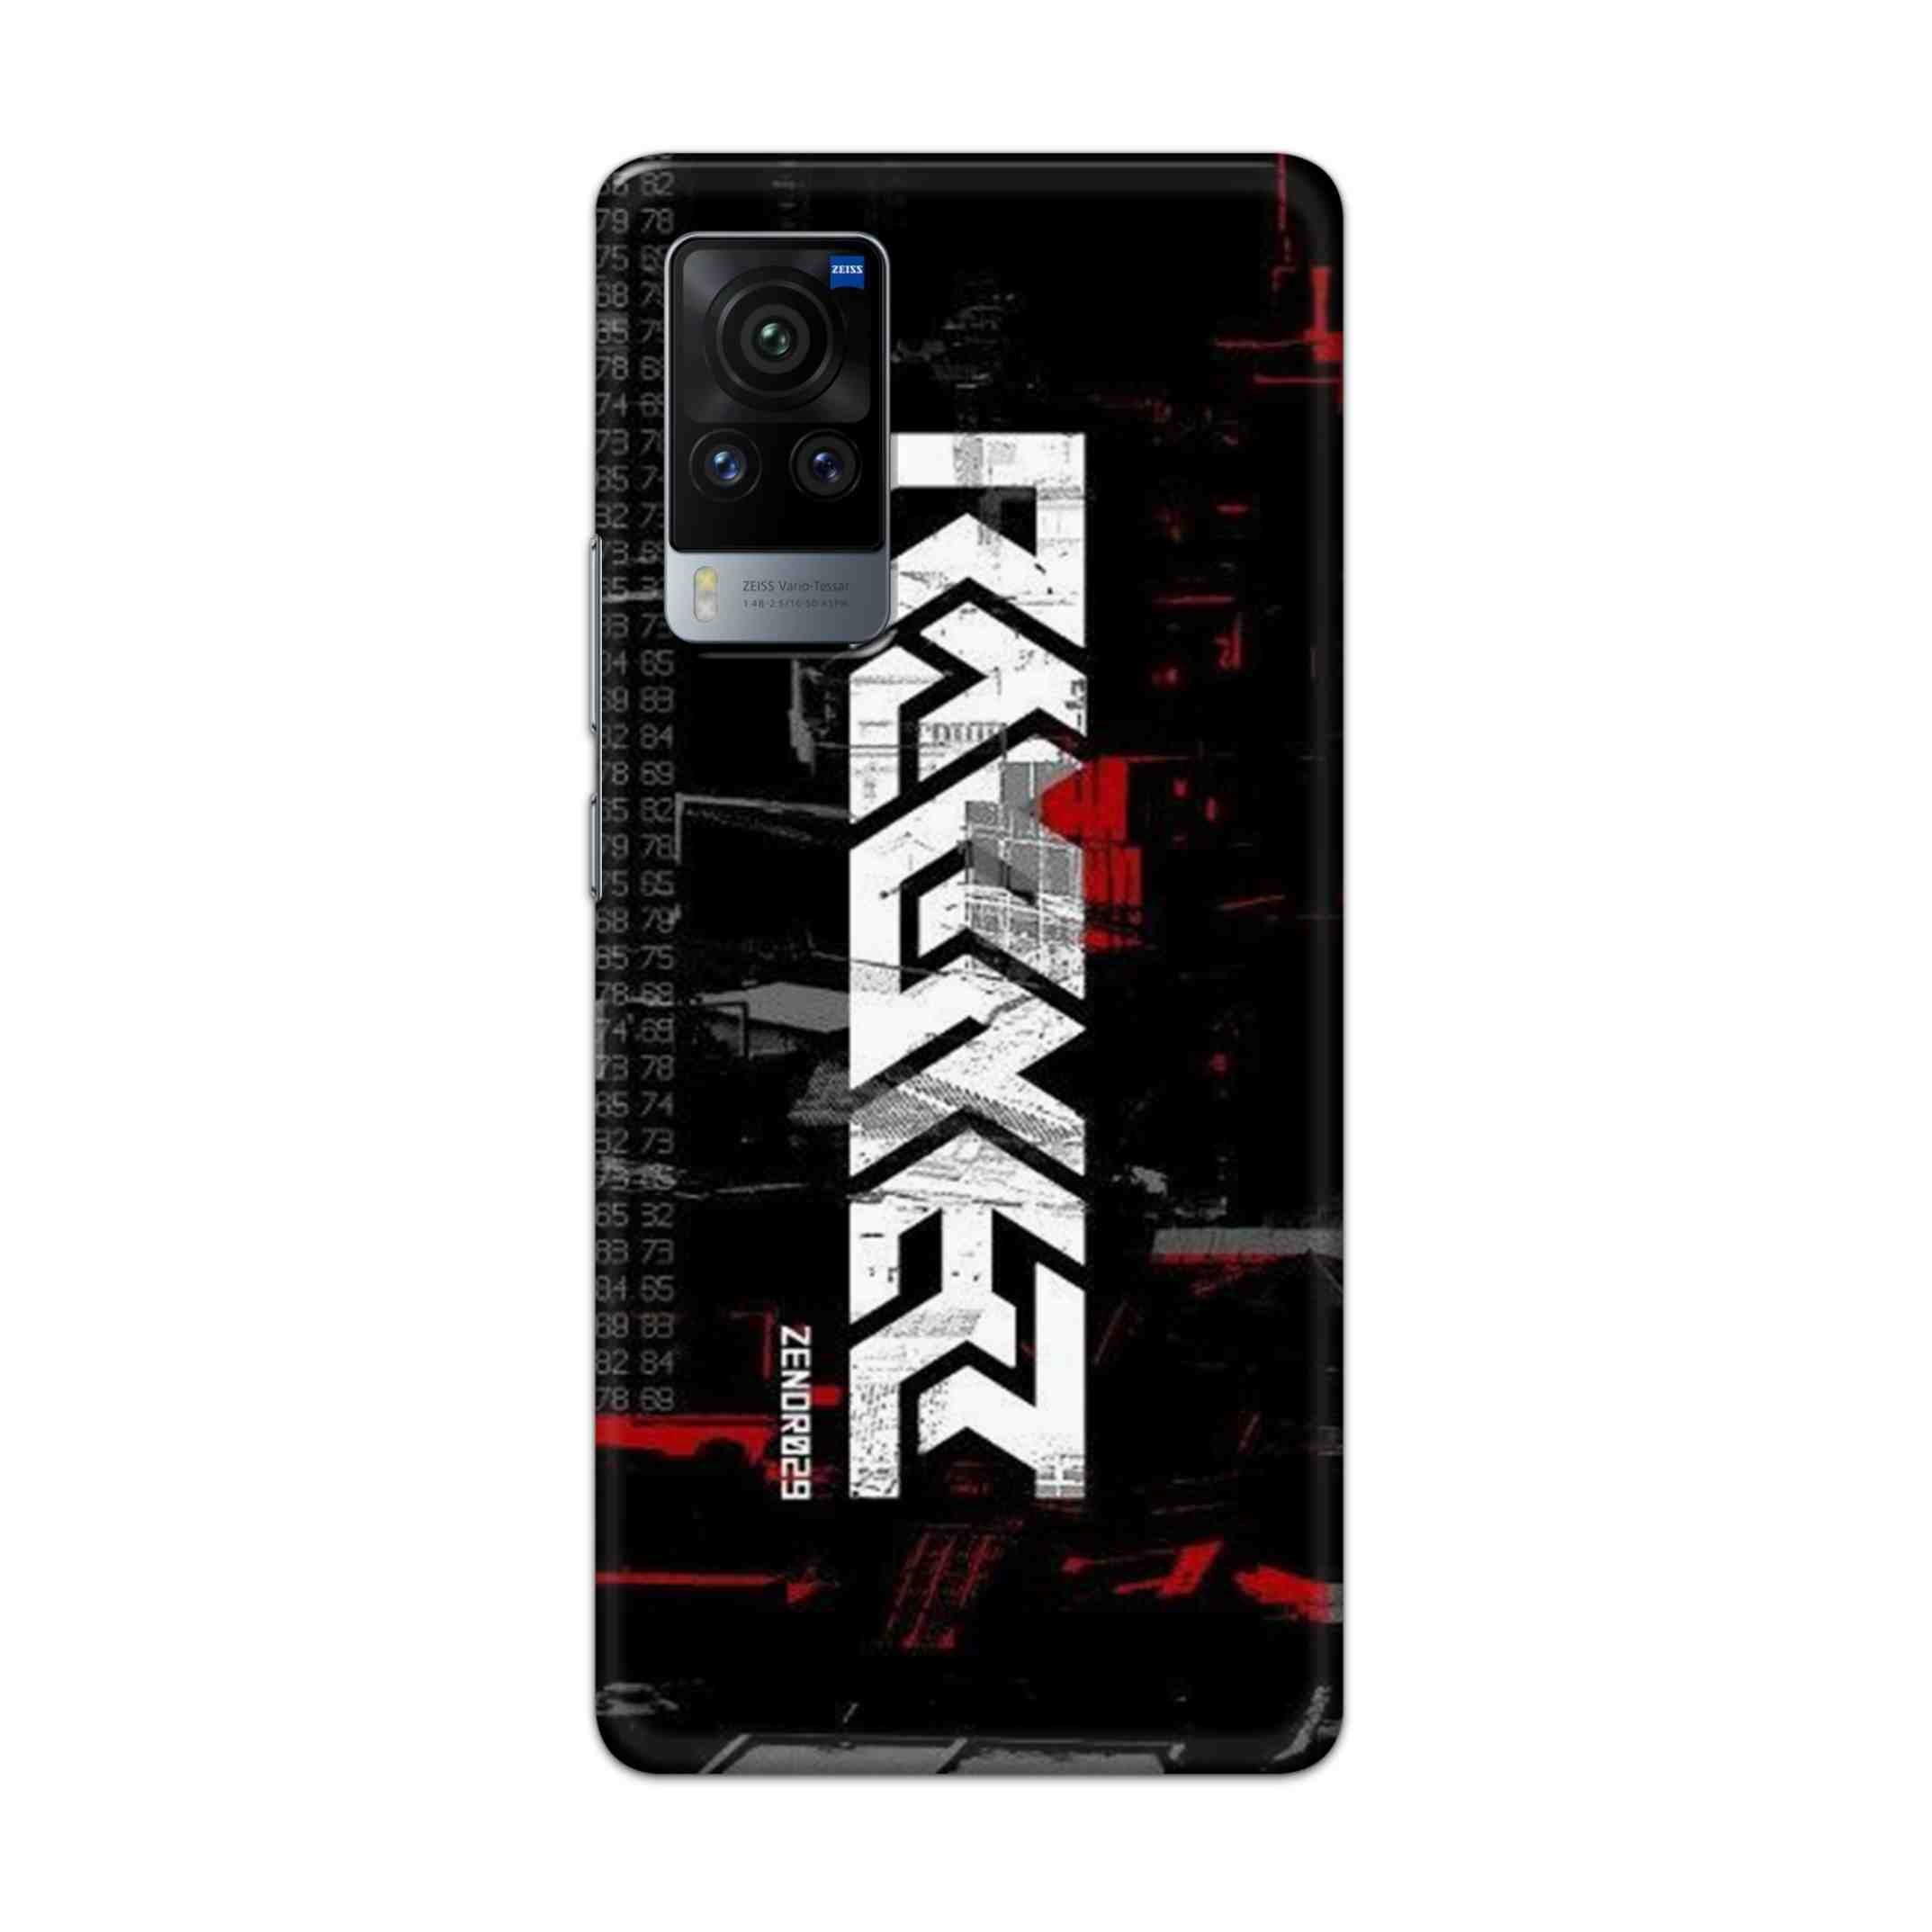 Buy Raxer Hard Back Mobile Phone Case Cover For Vivo X60 Pro Online